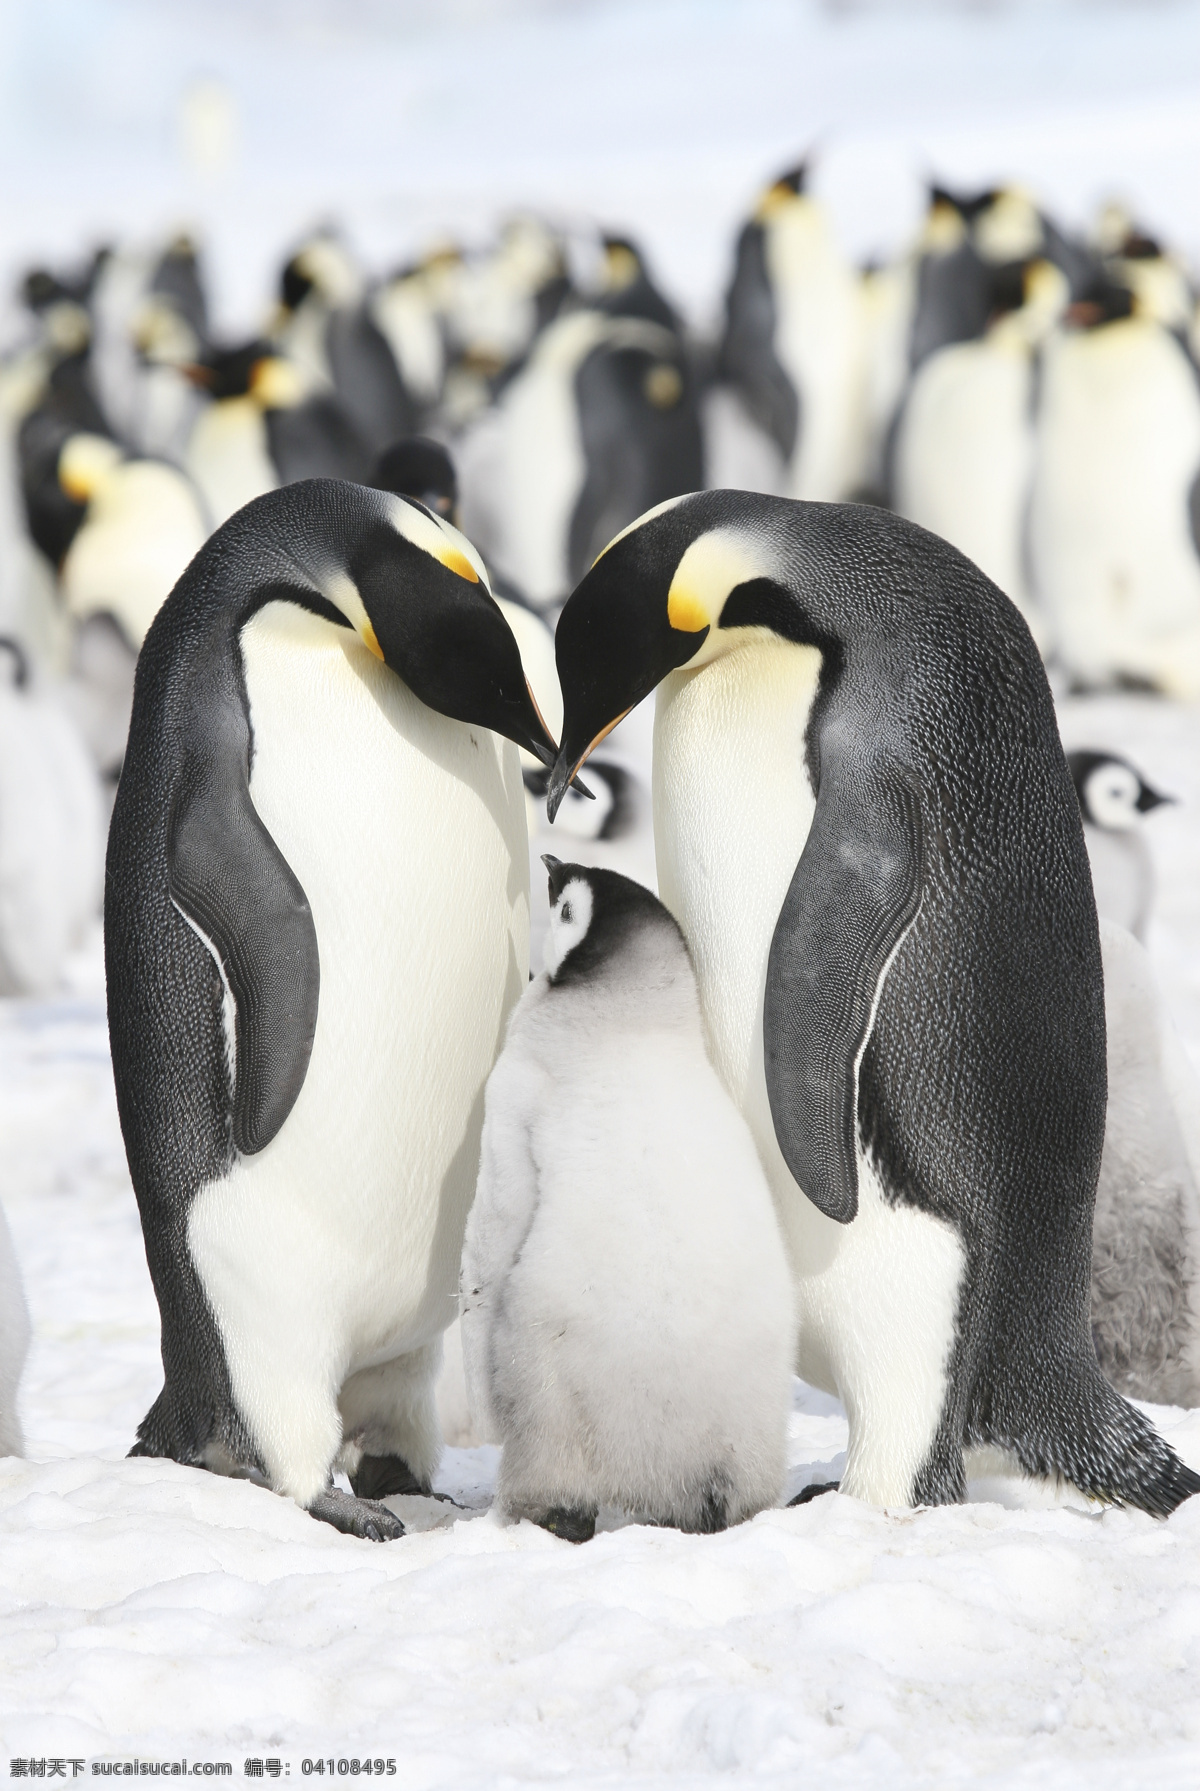 企鹅 全家福 企鹅jpg图 企鹅宝宝 企鹅一家 南极 野生动物 生物世界 冰雪 广告模版 桌面壁纸 大海 海洋 清晰 陆地动物